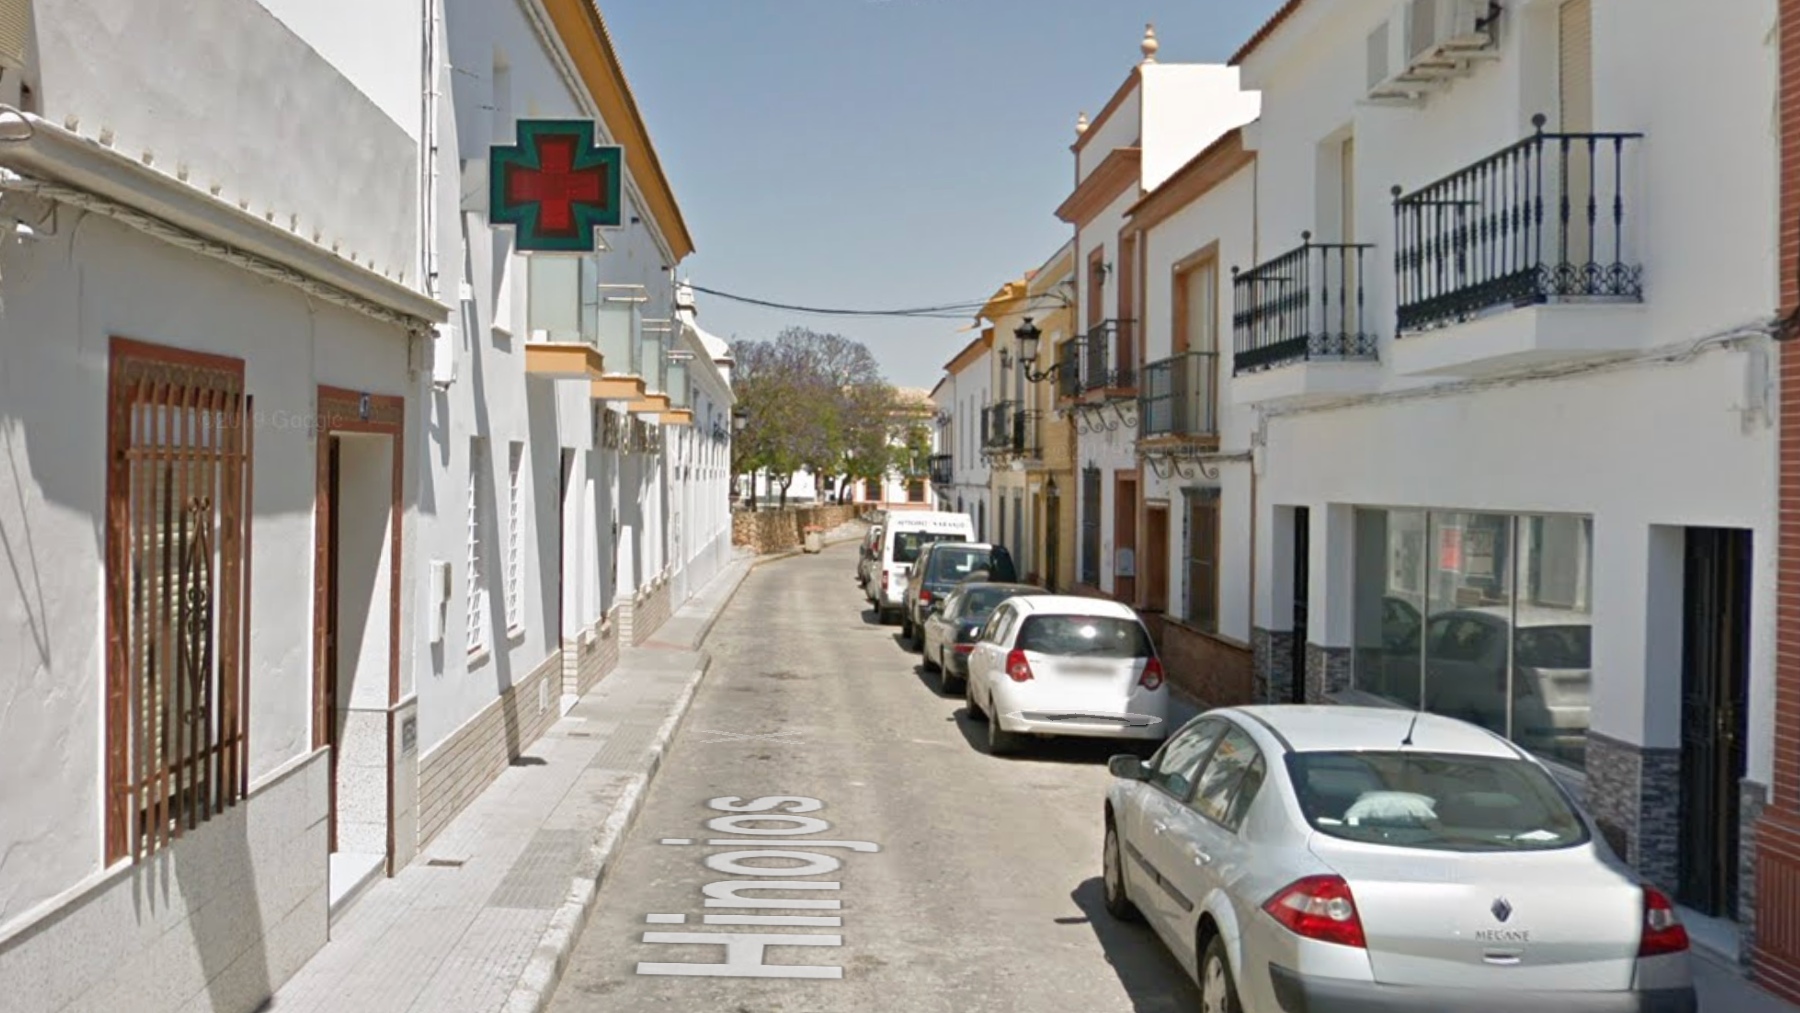 Farmacia Don Isabelo de Rociana del Condado (Huelva), lugar de los hechos.